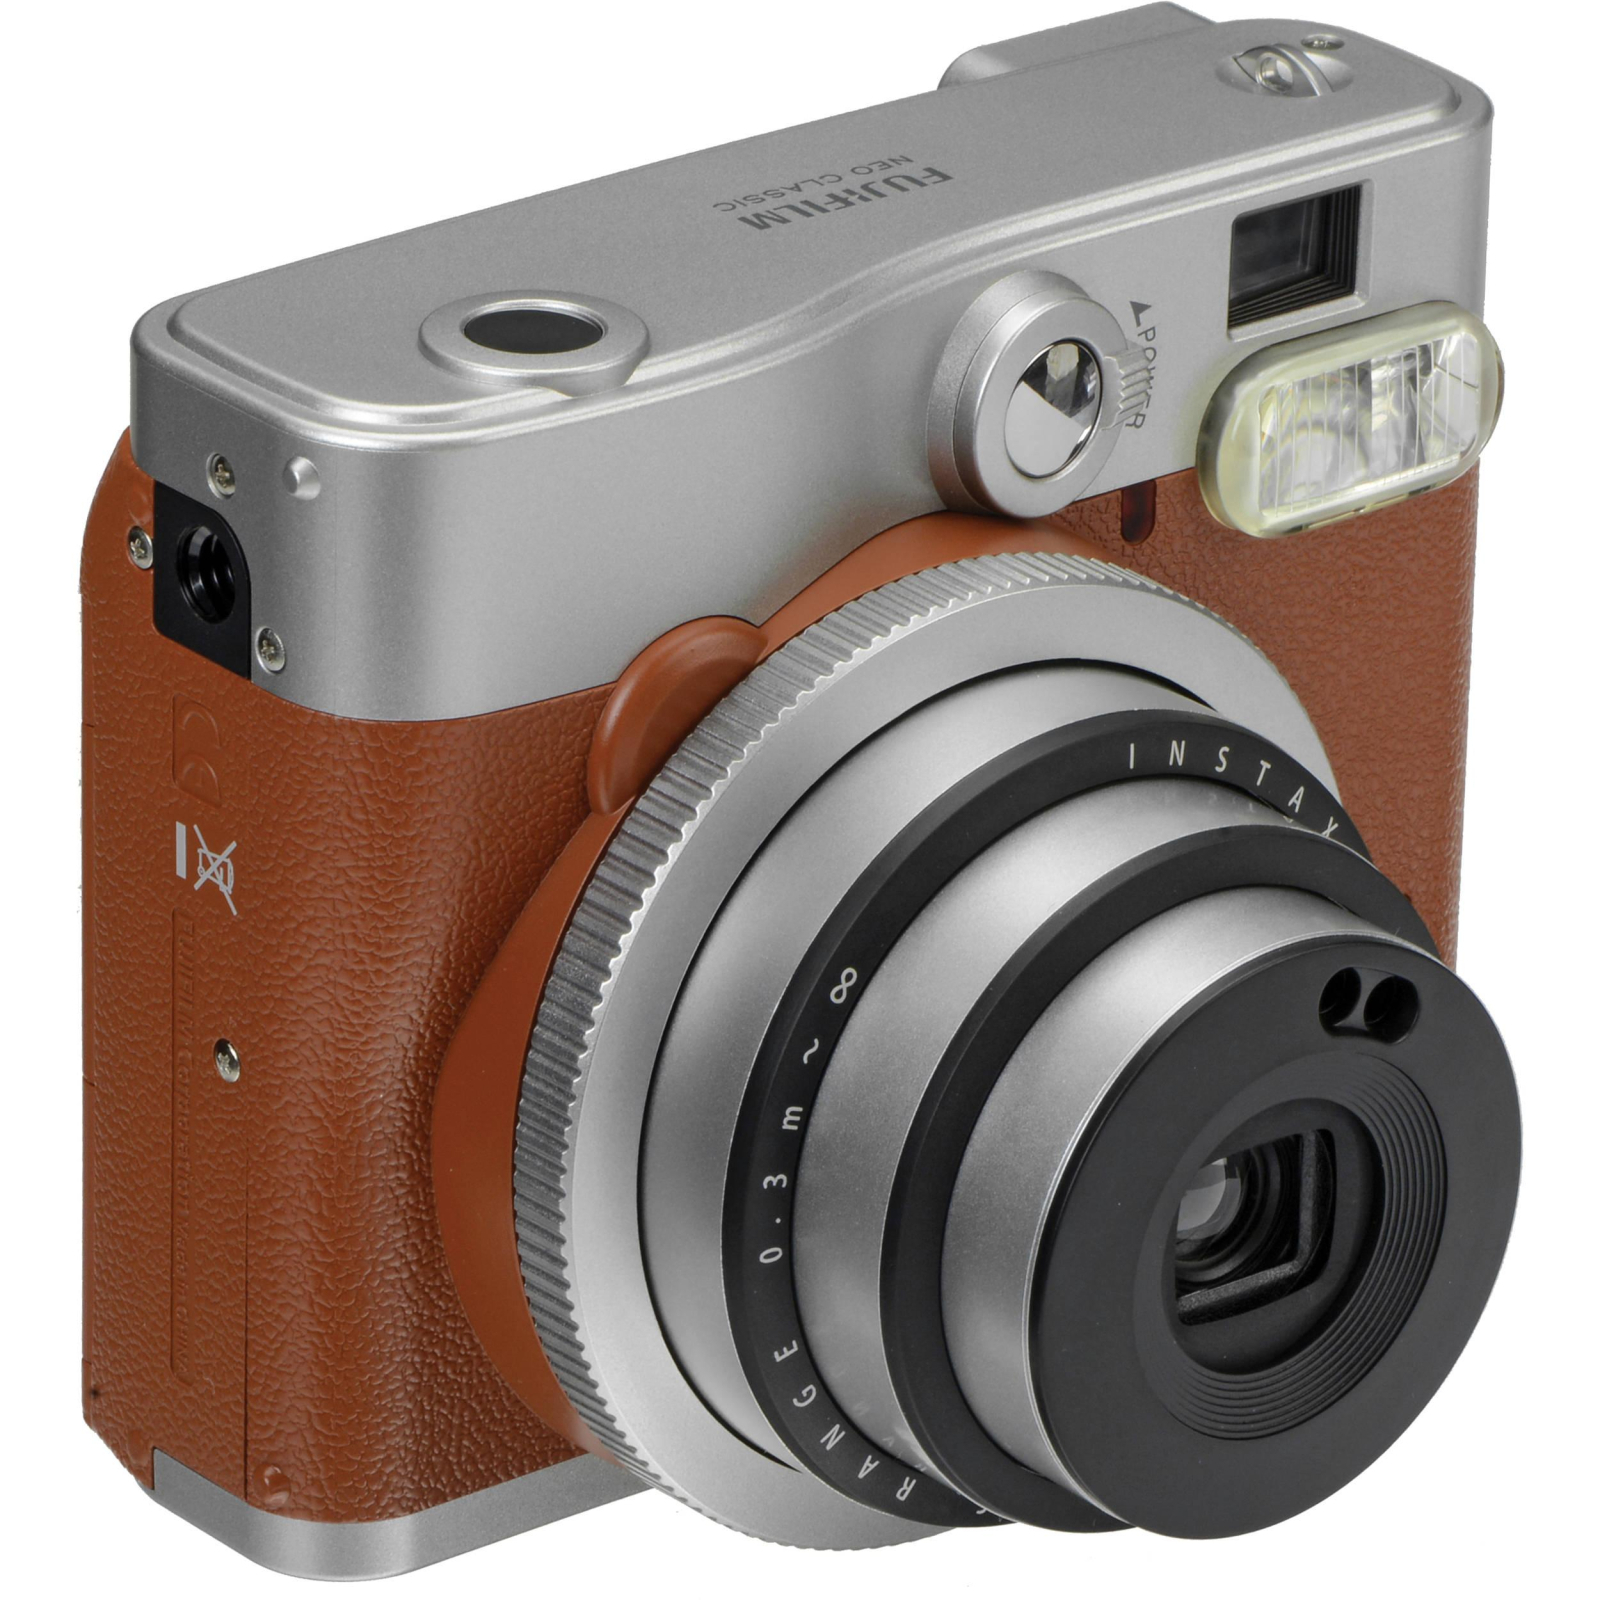 Камера моментальной печати Fujifilm Instax Mini 90 Instant camera Brown EX D (16423981) изображение 3